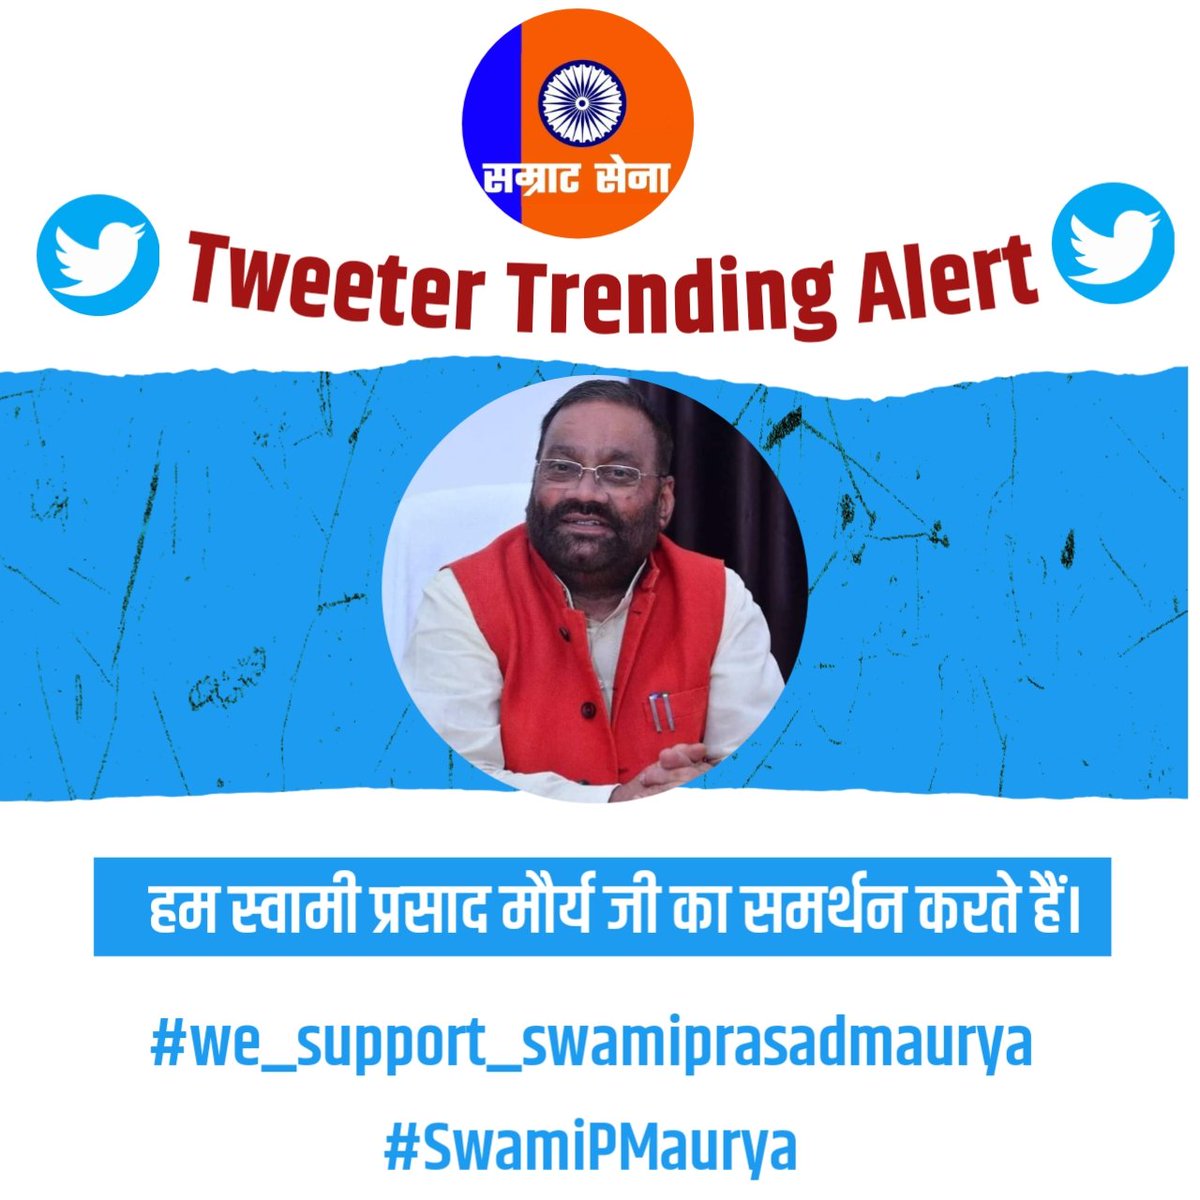 हम स्वामी प्रसाद मौर्य जी का समर्थन करते हैं।
#we_support_swamiprasadmaurya
#SwamiPMaurya
@SwamiPMaurya
भाजपा आईटी सेल द्वारा स्वामी प्रसाद मौर्य जी को अरेस्ट करने को लेकर ट्विटर ट्रेंड चल रहे हैं